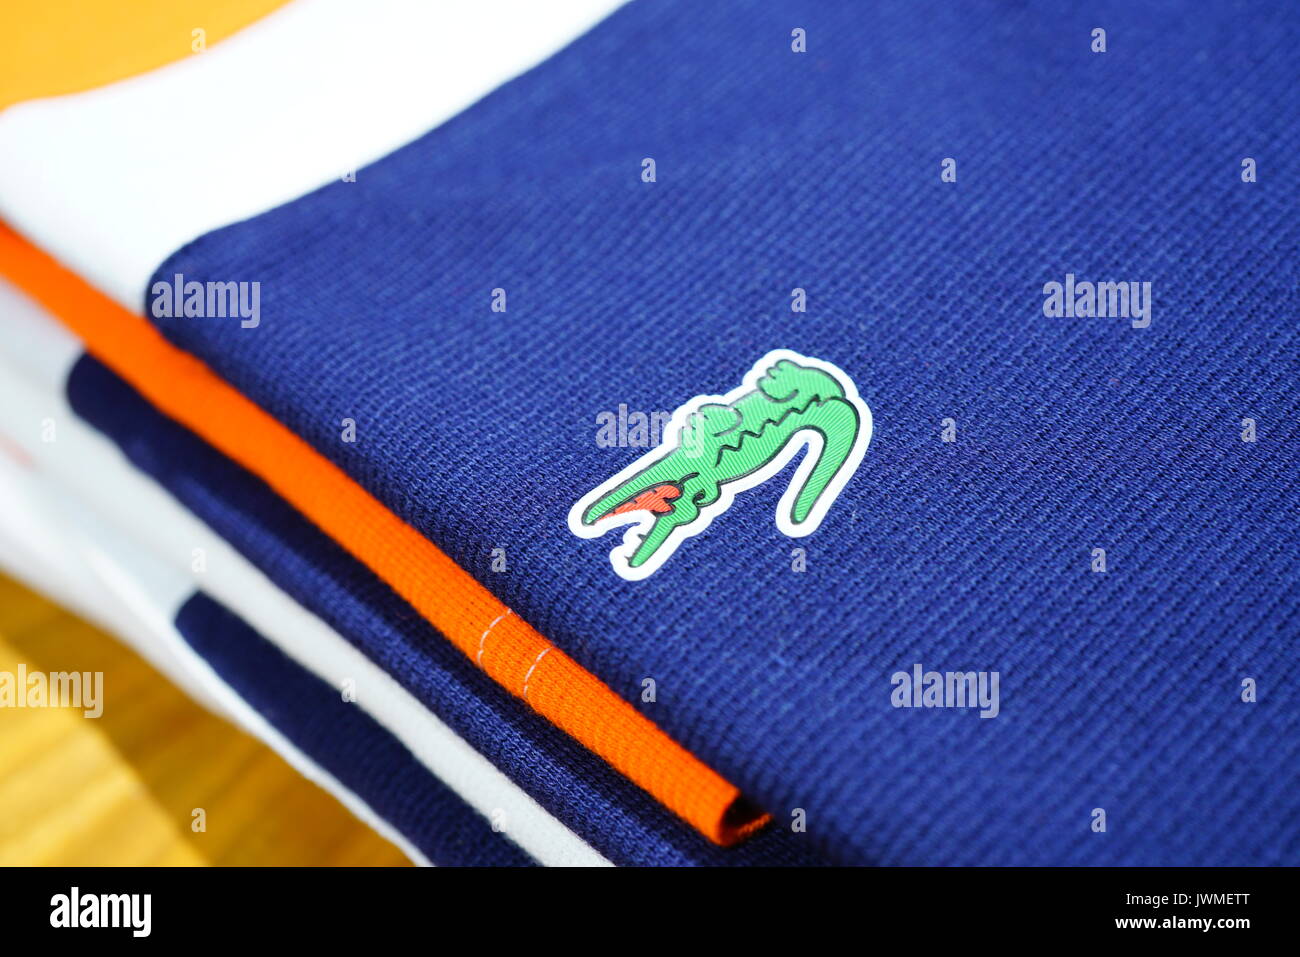 Pile di coloratissimi Lacoste magliette polo sugli scaffali del negozio. Lacoste è un abbigliamento francese azienda famosa per i suoi campi da tennis magliette. Foto Stock